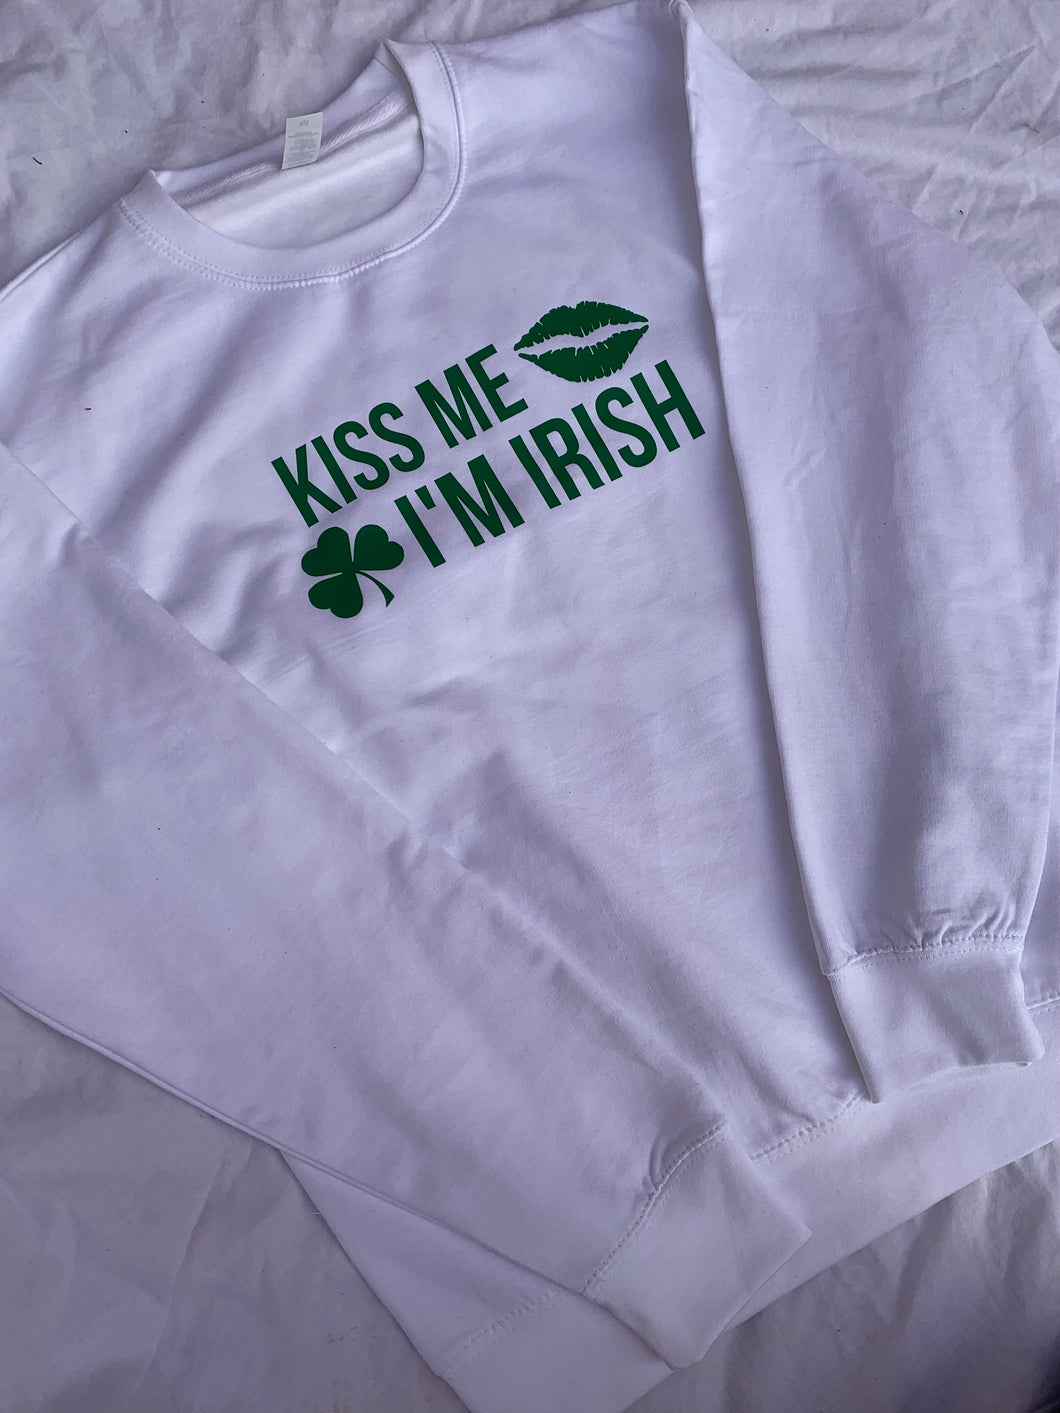 Kiss Me Im Irish Sweatshirt